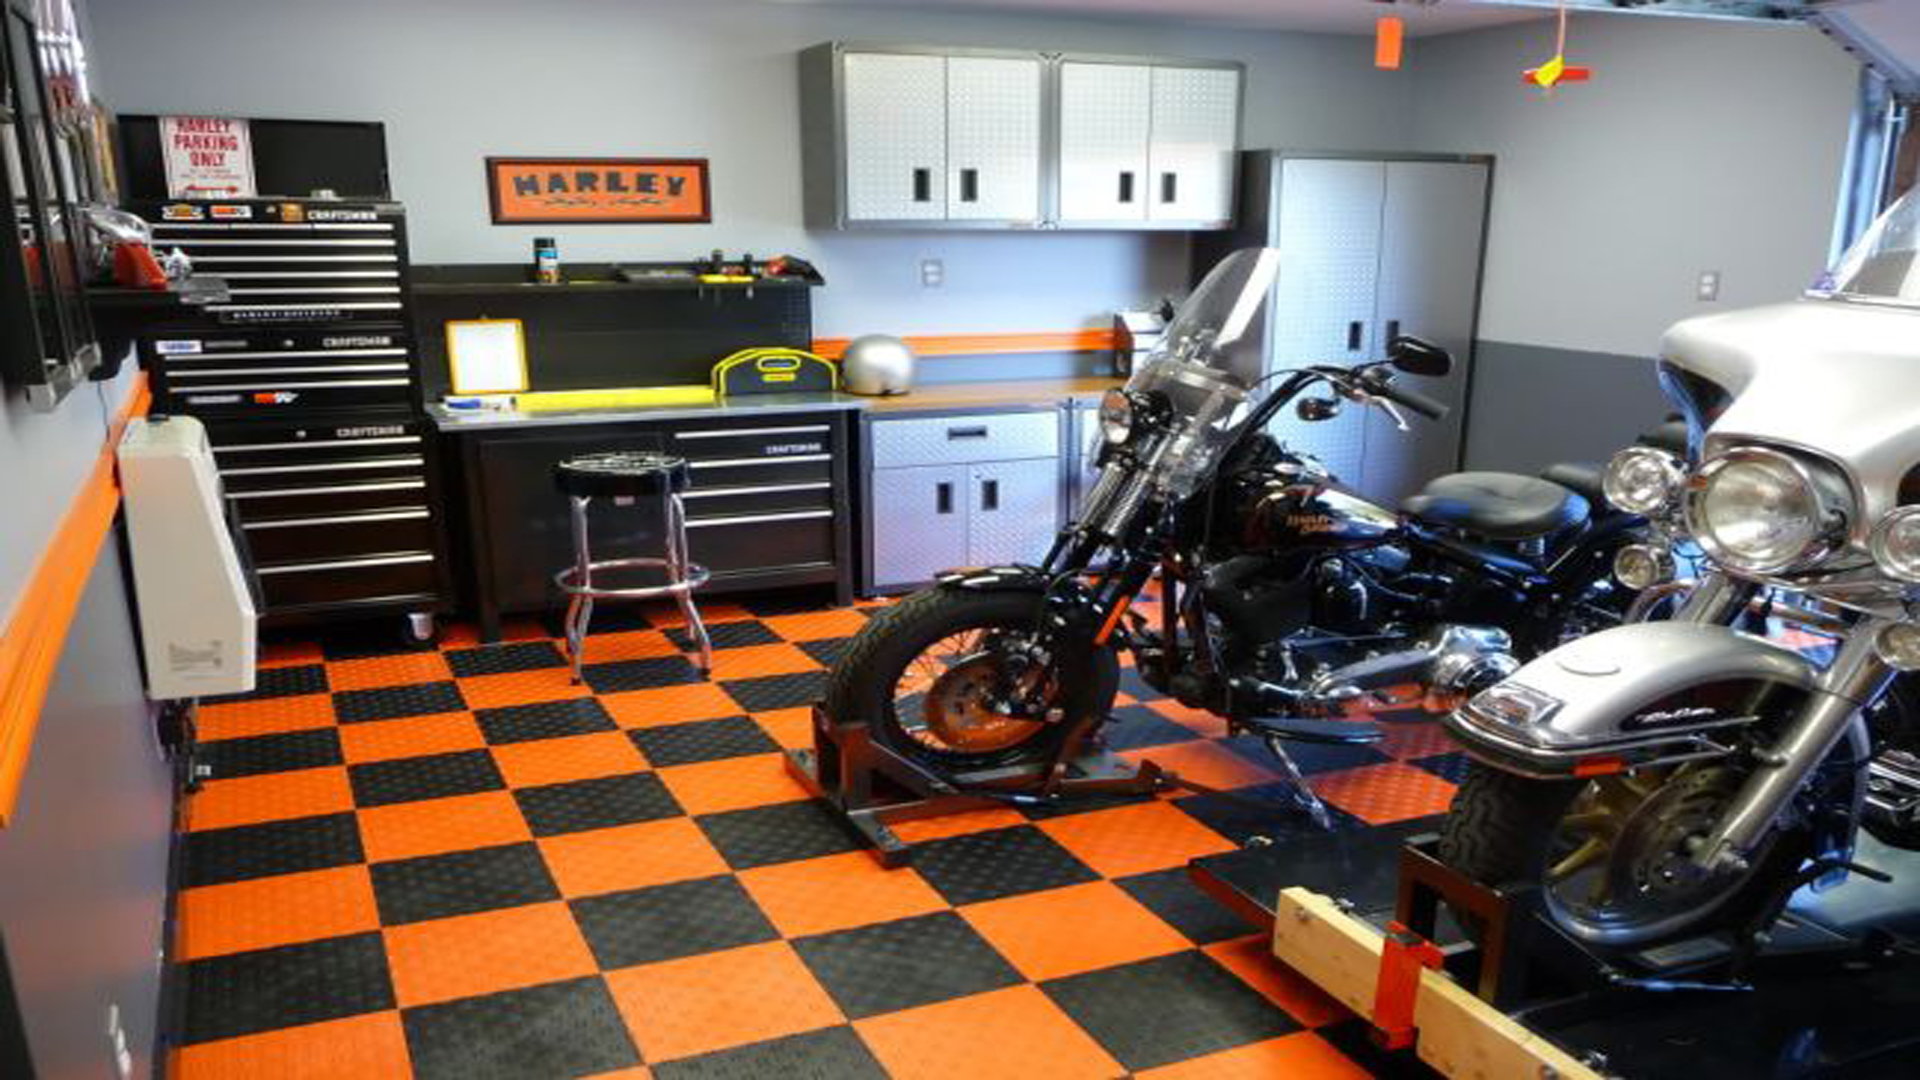 Harley Davidson: The Ultimate Motorcycle Garage Part I | Hdforums